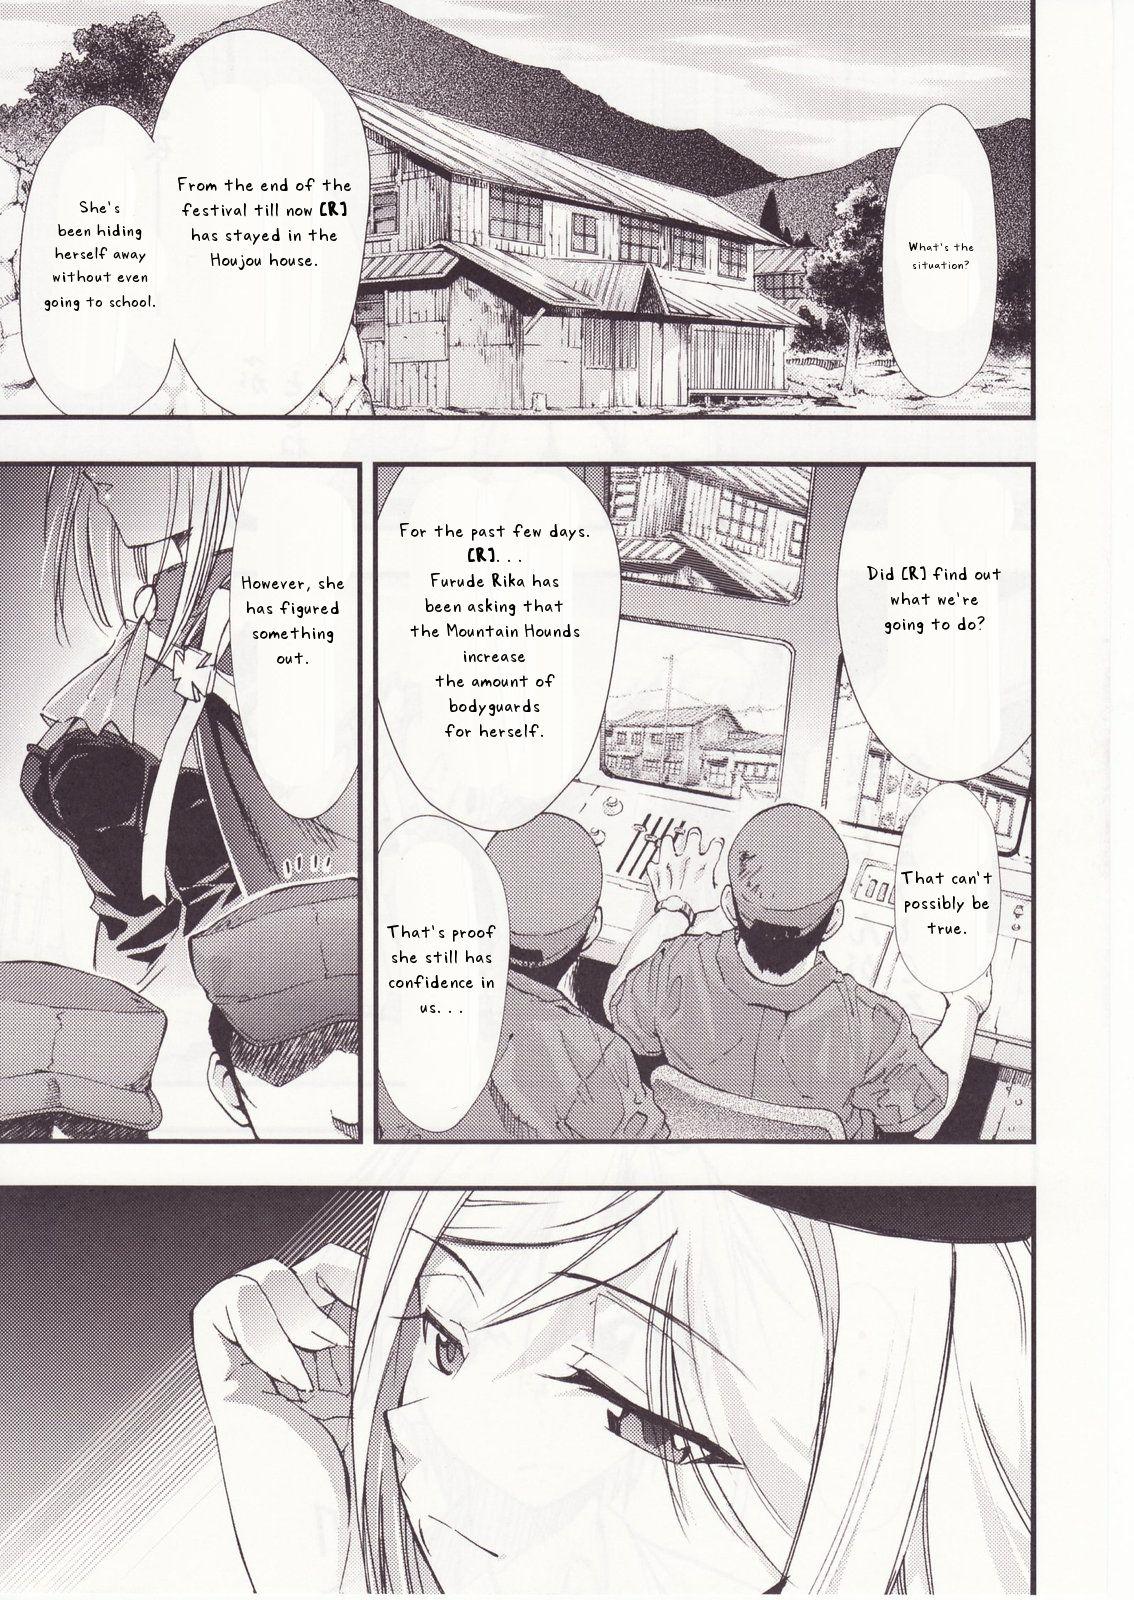 Daddy Higurashi no Naku You ni San - Higurashi no naku koro ni Blond - Page 11